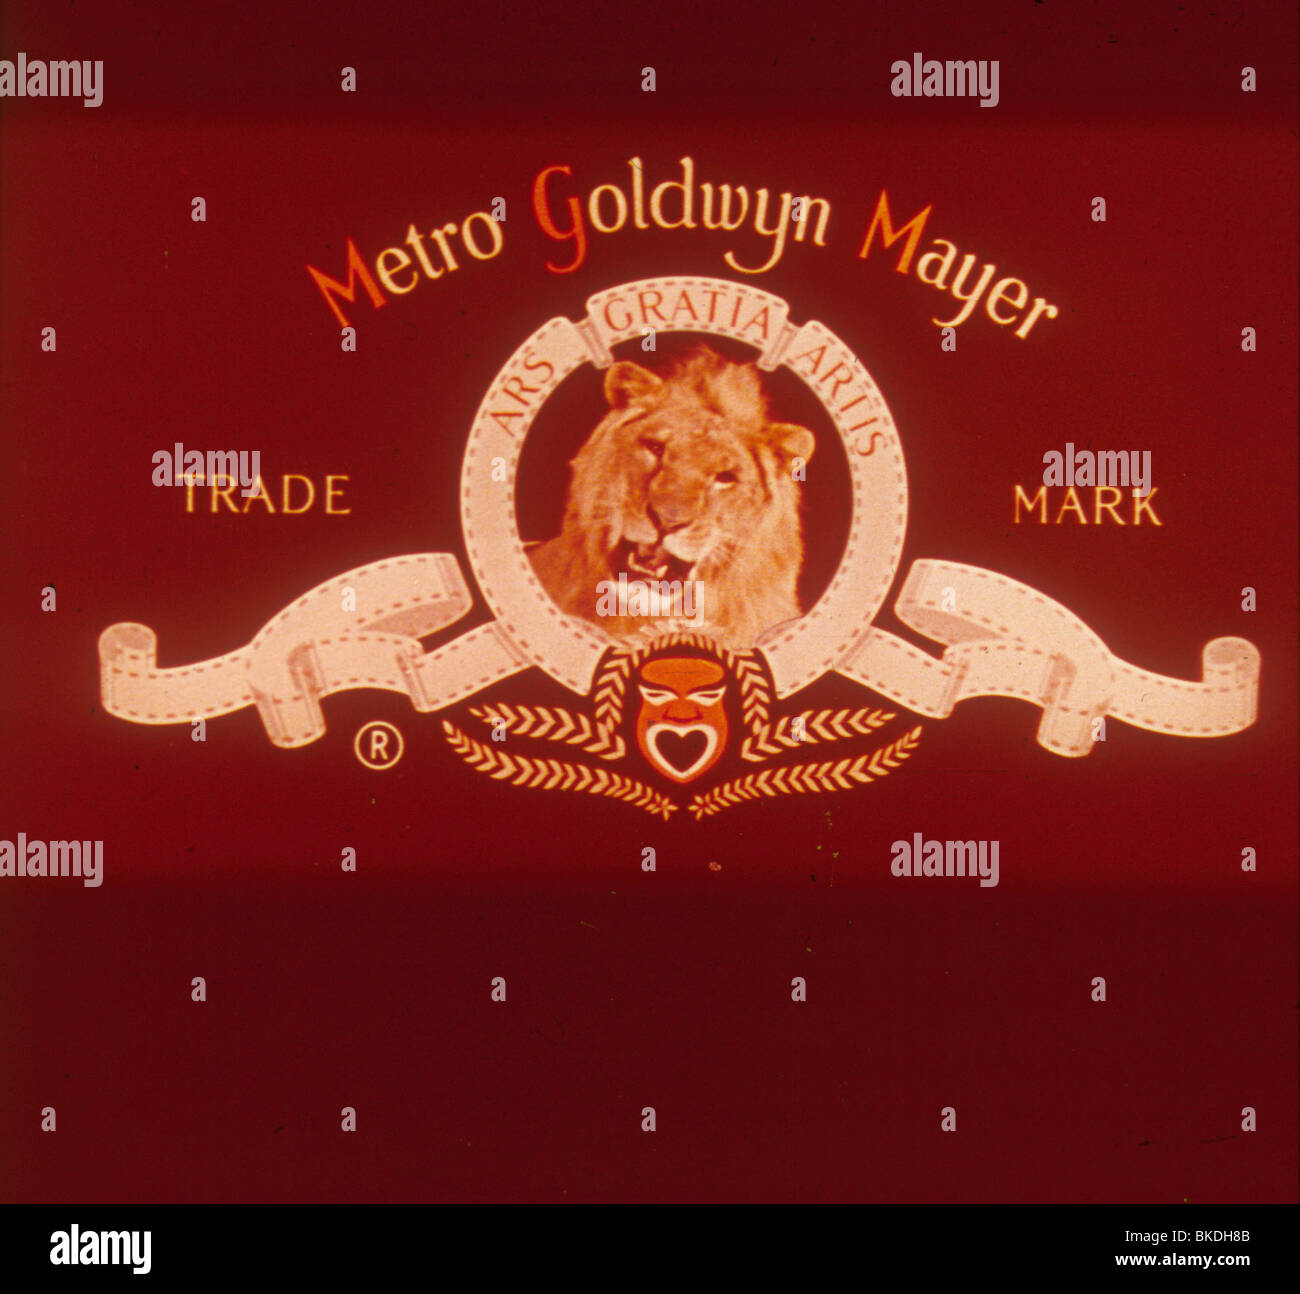 LOGO la Metro Goldwyn Mayer (MGM) Foto Stock